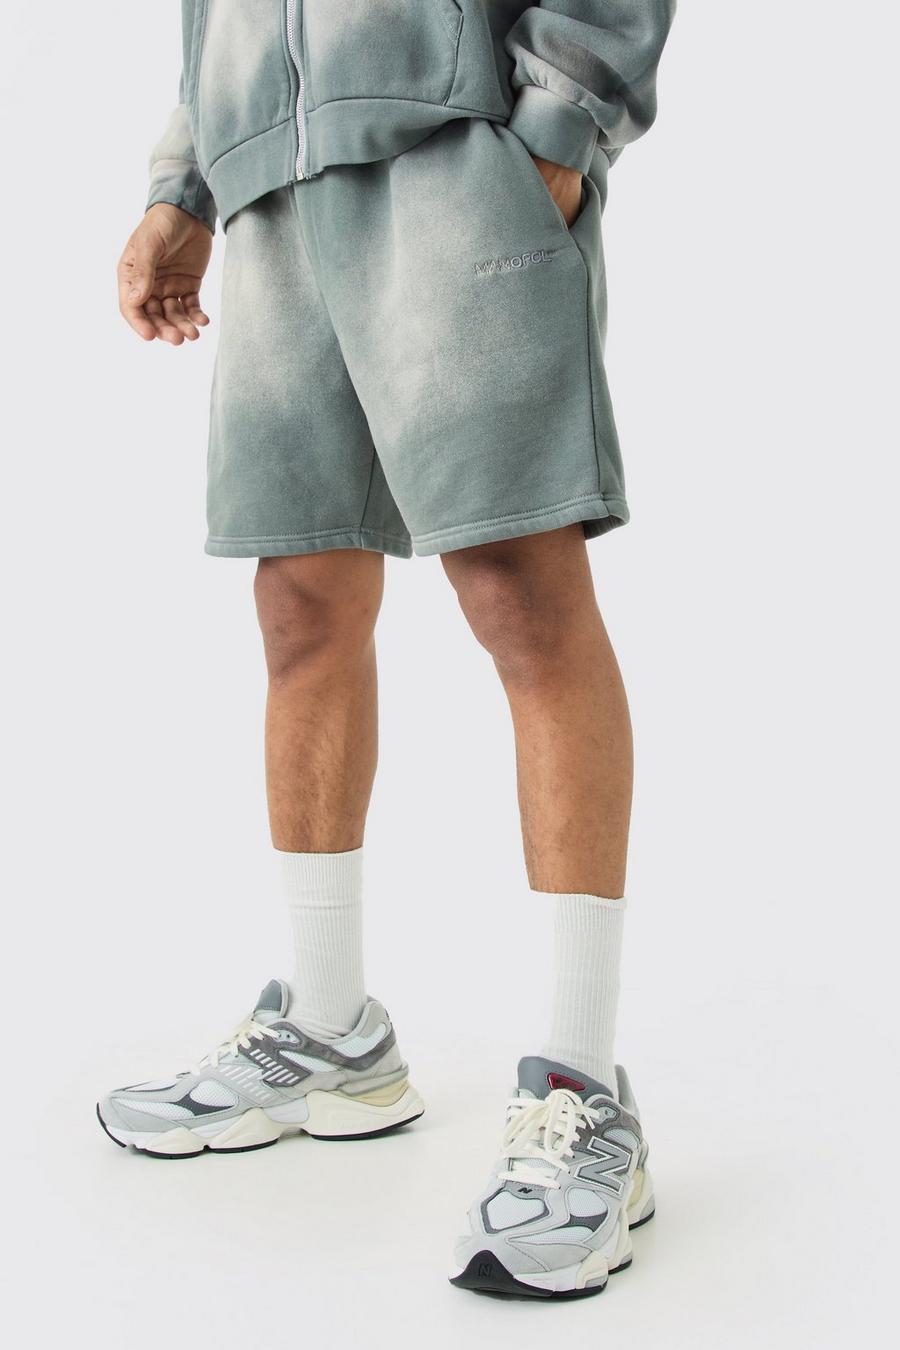 Lockere gebleichte Man Shorts, Grey